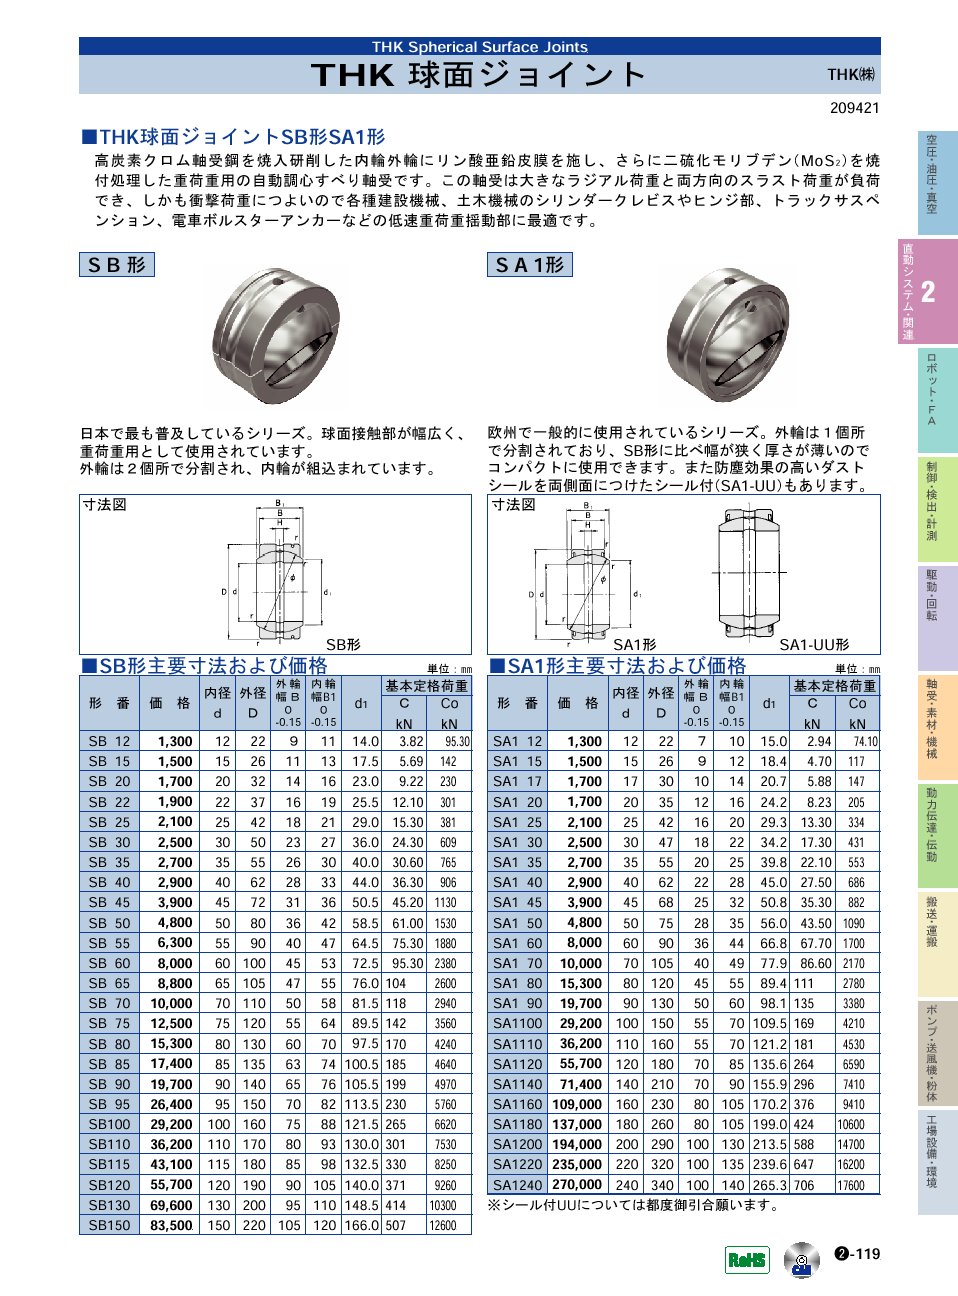 THK(株)　球面ジョイント　直動システム・関連機器　P02-119　価格